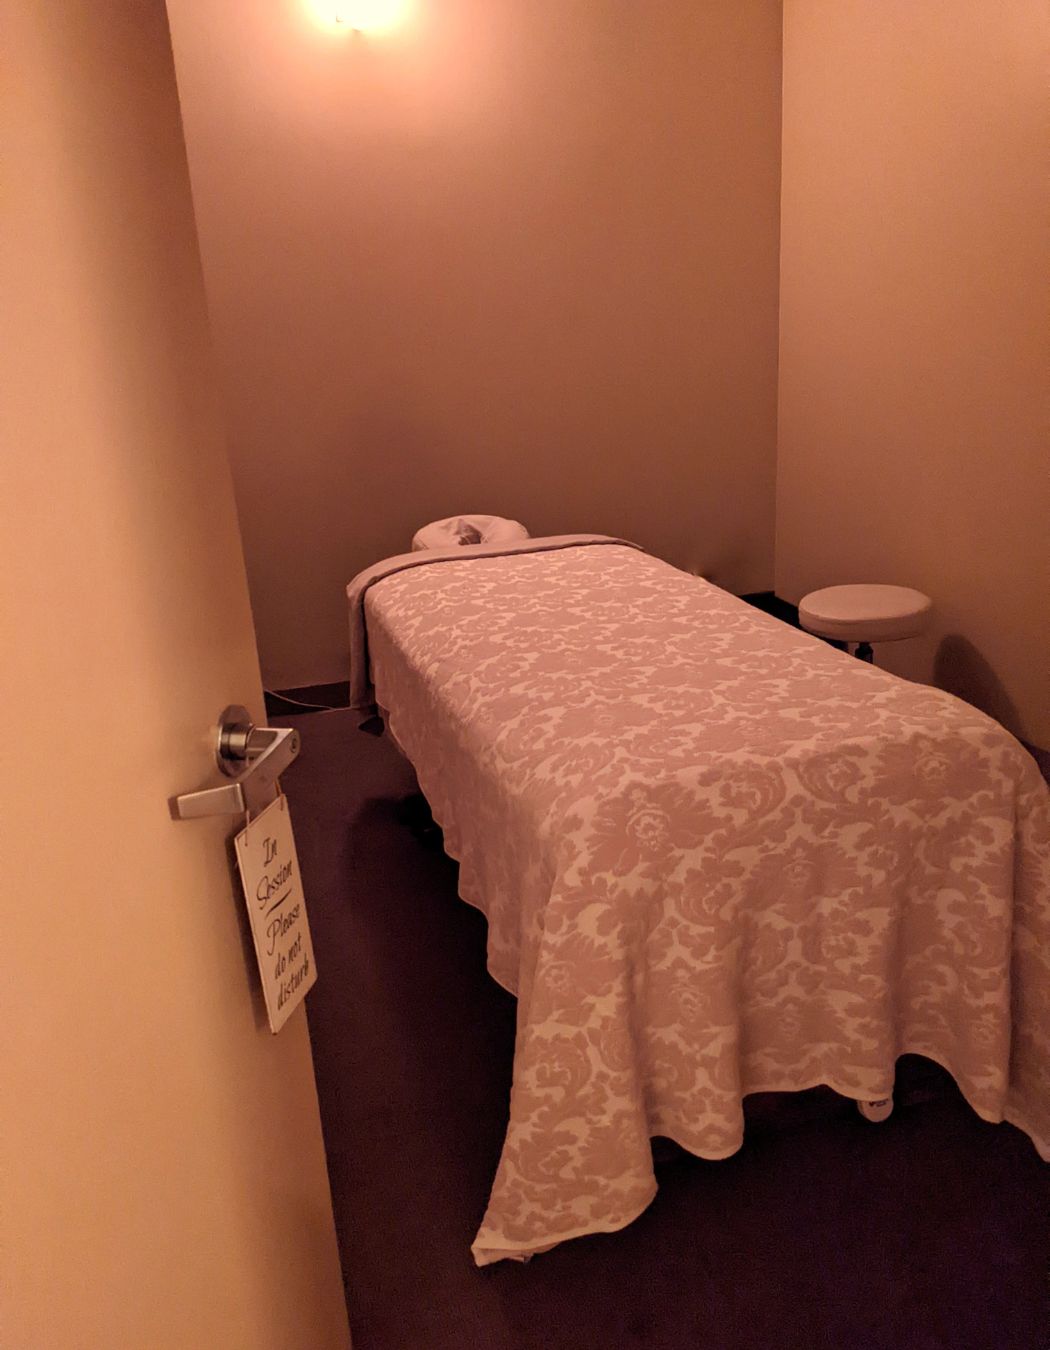 The Massage Therapy Center, los angeles, 90025, California, massage, facial, hot stone massage, spa, wellness, Shiatsu, Deep Tissue, Swedish, Lomi Lomi, Reflexology, muscle streching